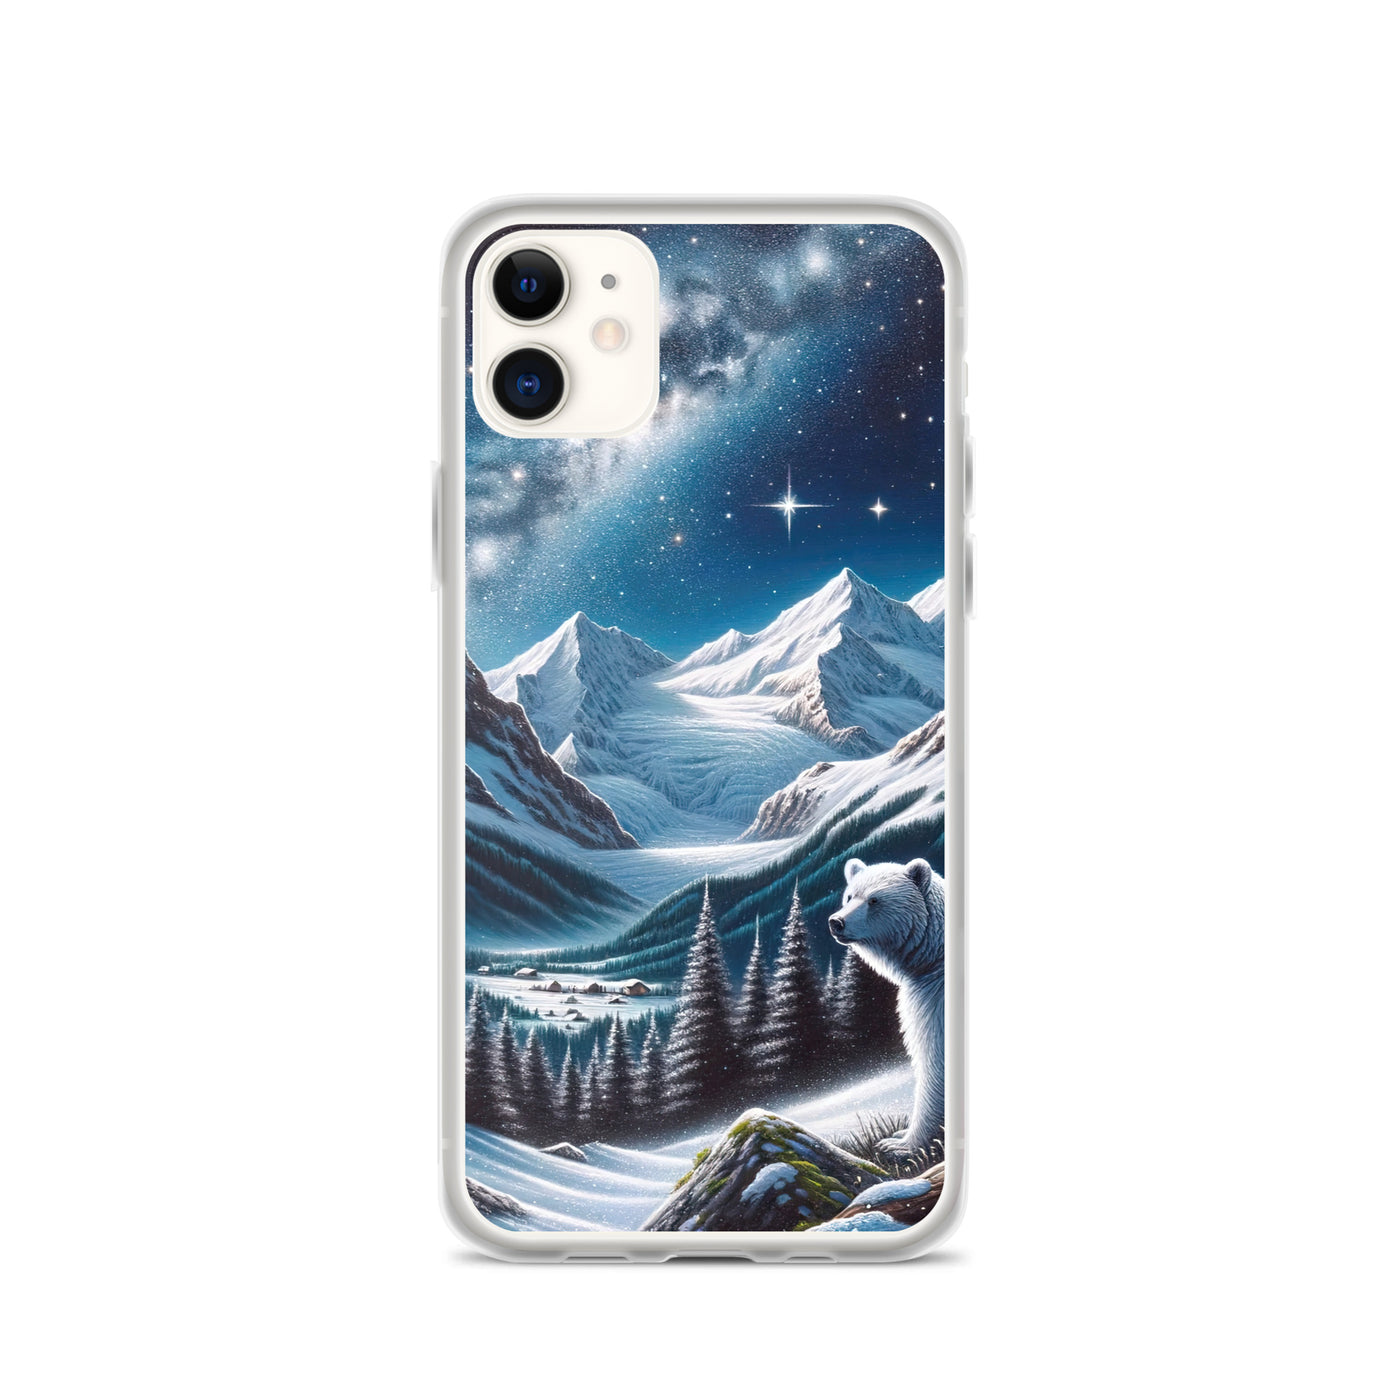 Sternennacht und Eisbär: Acrylgemälde mit Milchstraße, Alpen und schneebedeckte Gipfel - iPhone Schutzhülle (durchsichtig) camping xxx yyy zzz iPhone 11